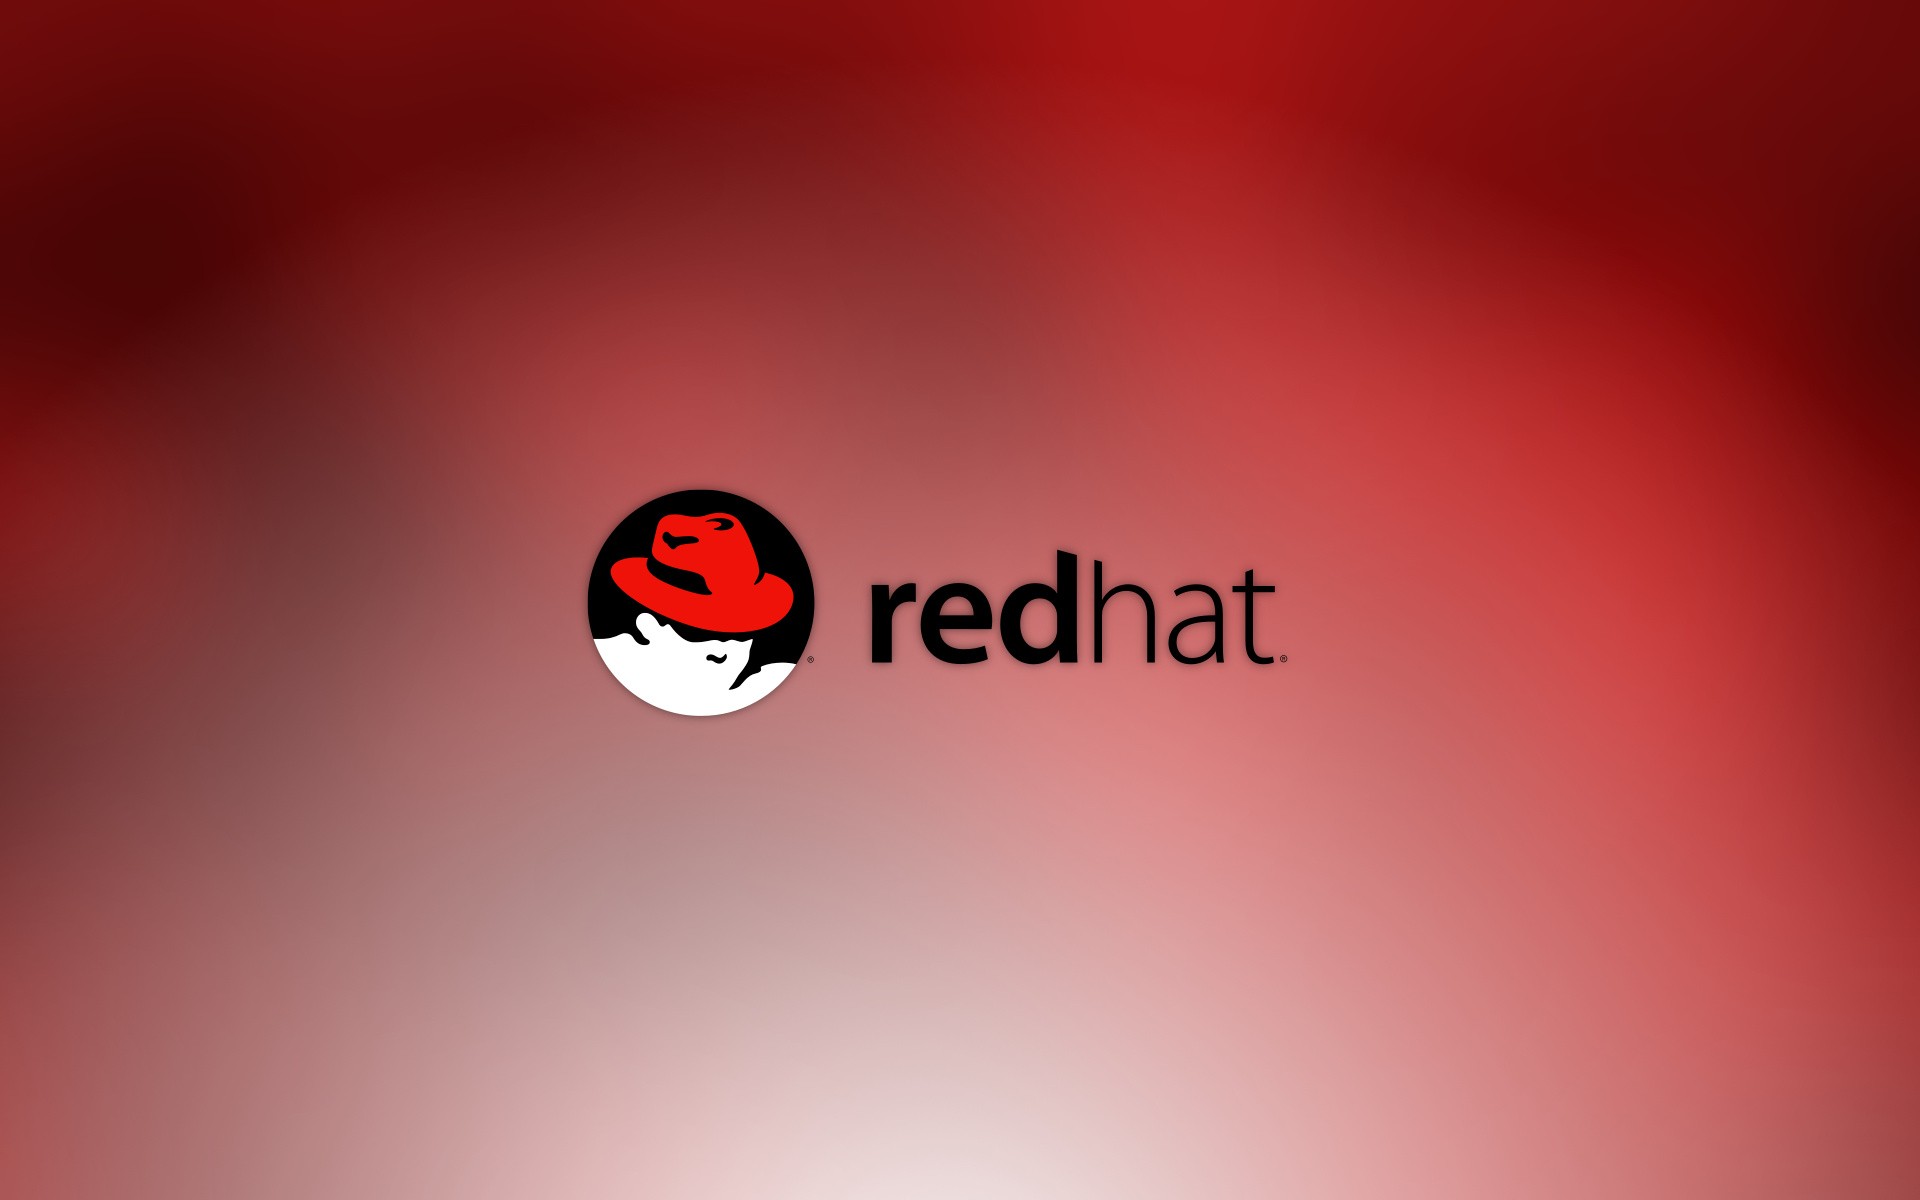 Ред хат. Линукс Red hat. Ред хэт Энтерпрайз линукс. RHEL Linux. Обои Red hat.